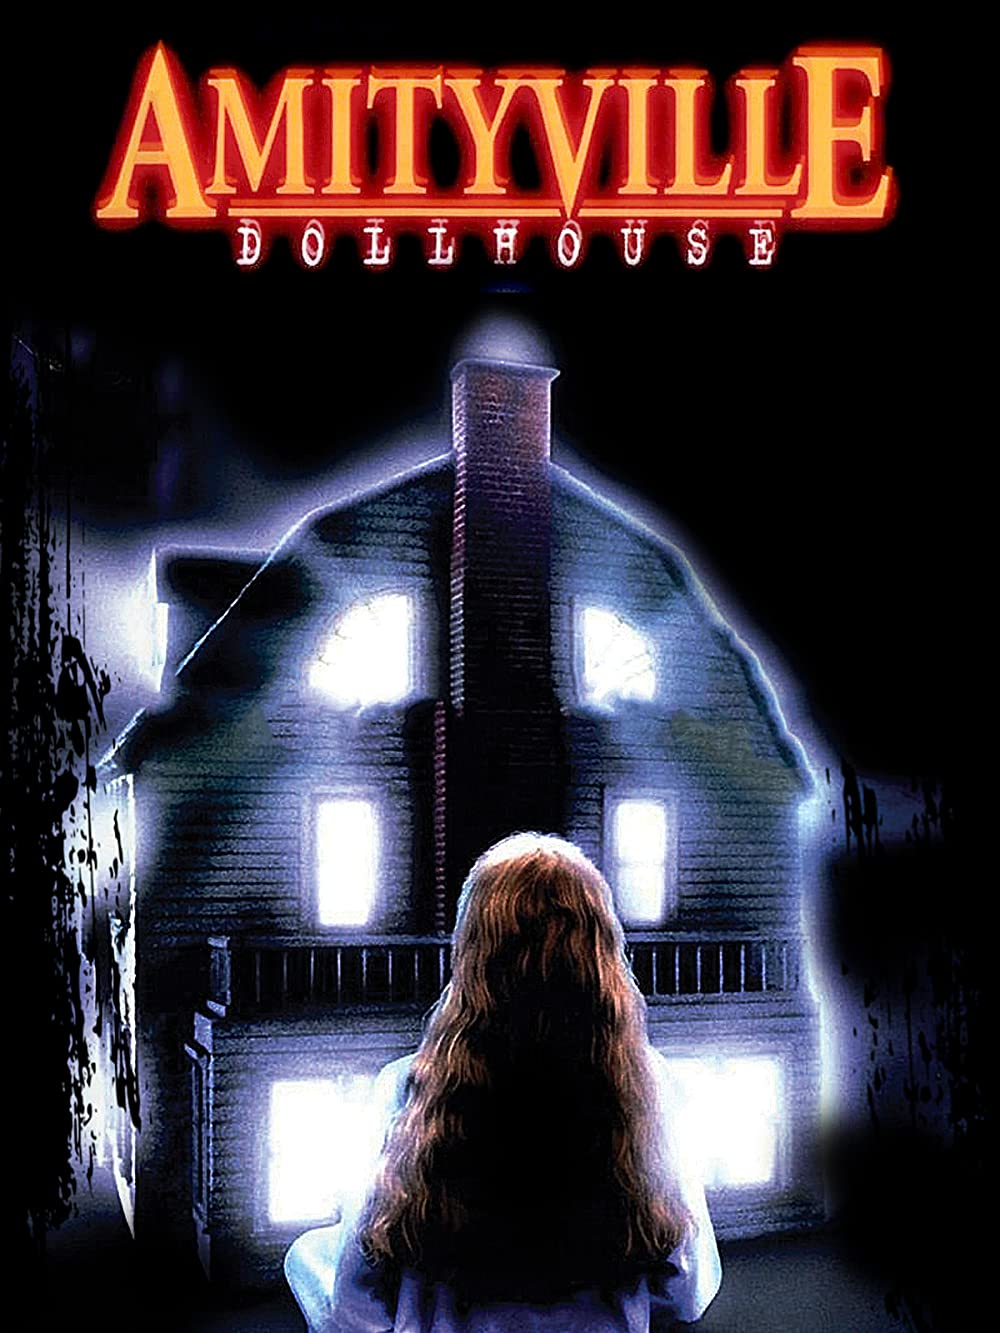 Amityville dollhouse (1996)